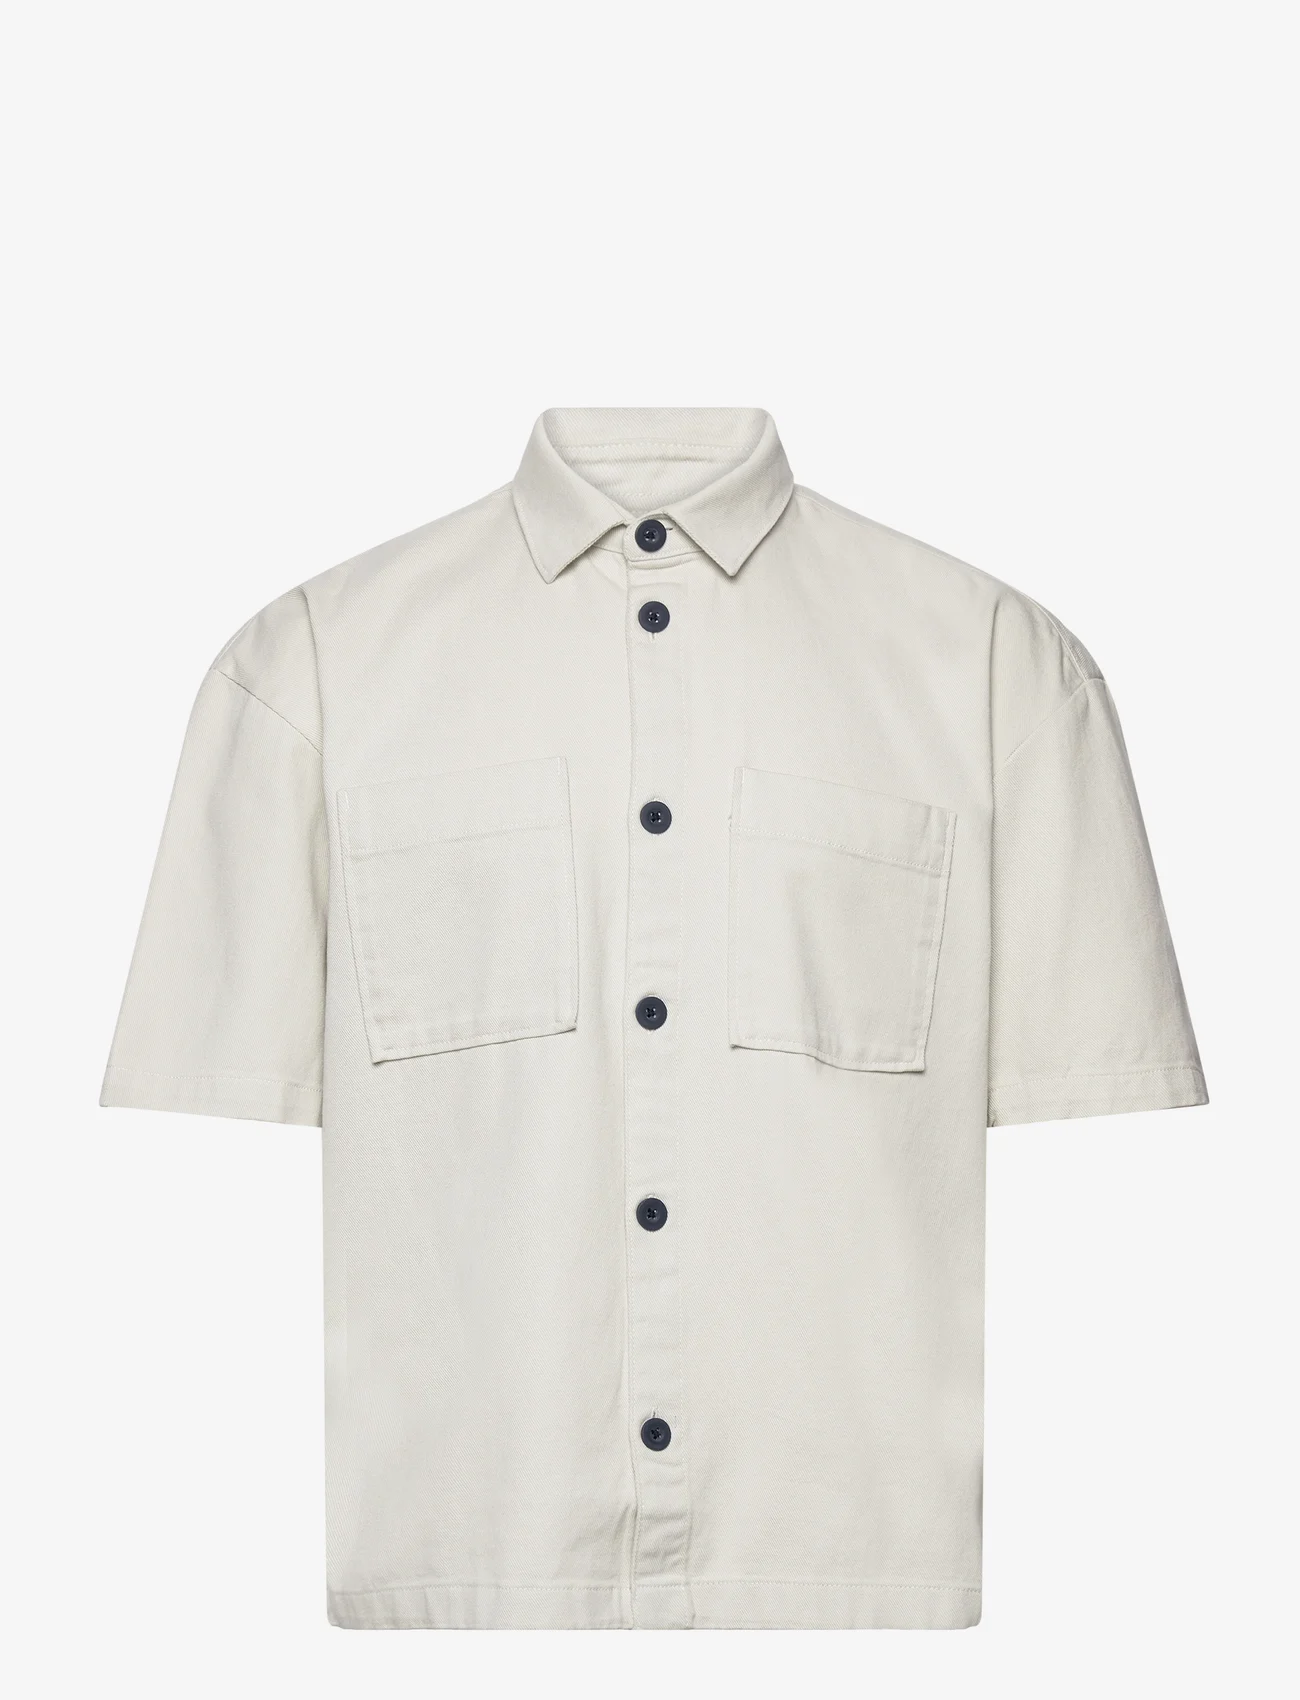 Tom Tailor - boxy twill shirt - basic skjorter - white sand - 0